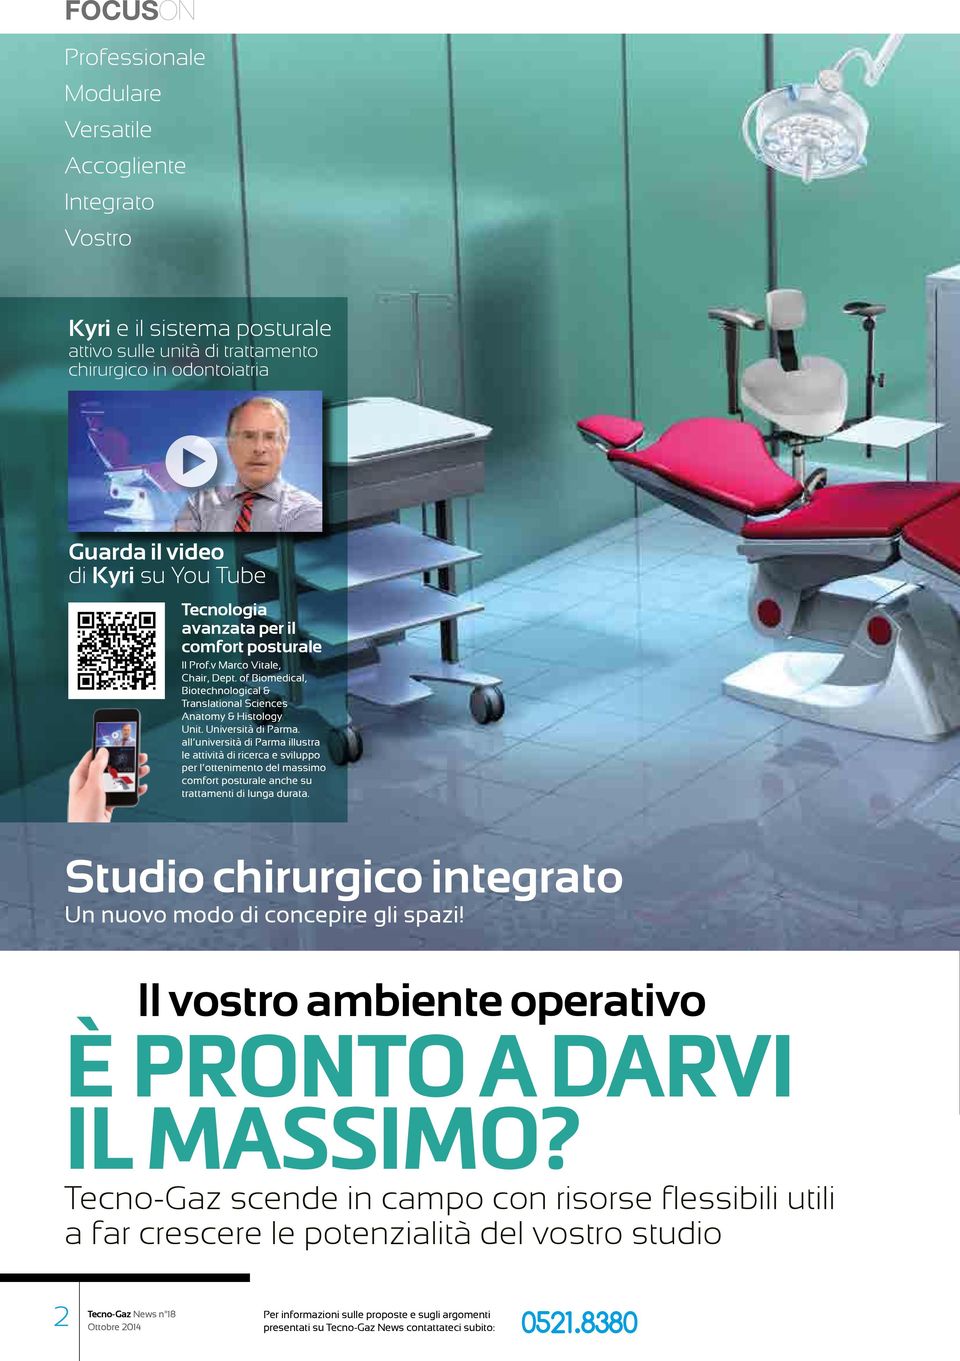 all università di Parma illustra le attività di ricerca e sviluppo per l ottenimento del massimo comfort posturale anche su trattamenti di lunga durata.